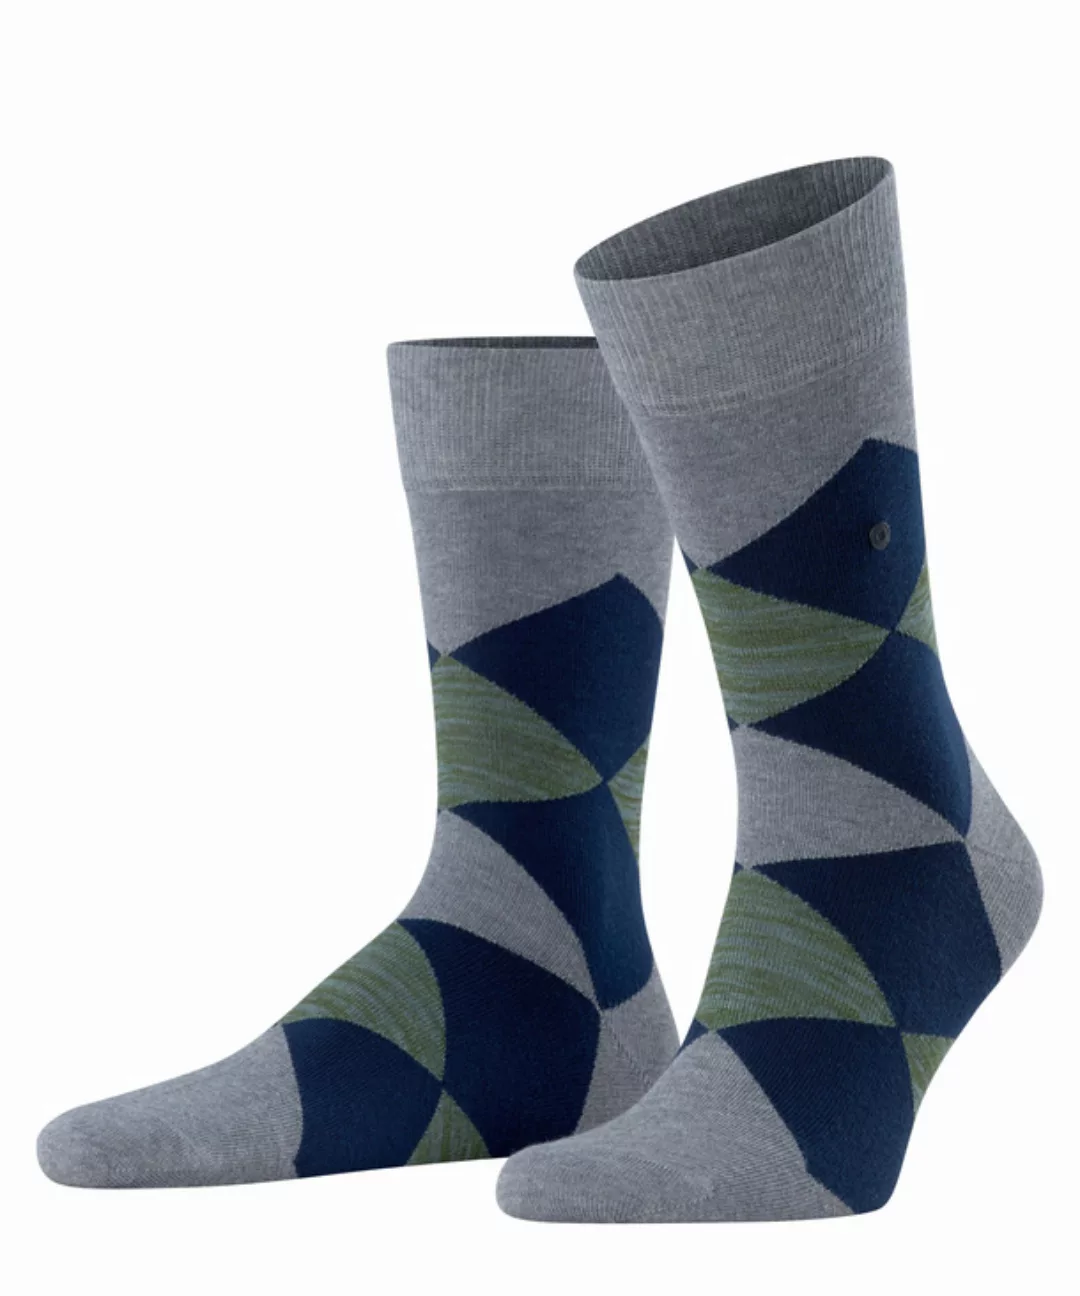 Burlington Black Clyde Herren Socken, 40-46, Schwarz, Raute, Baumwolle, 218 günstig online kaufen